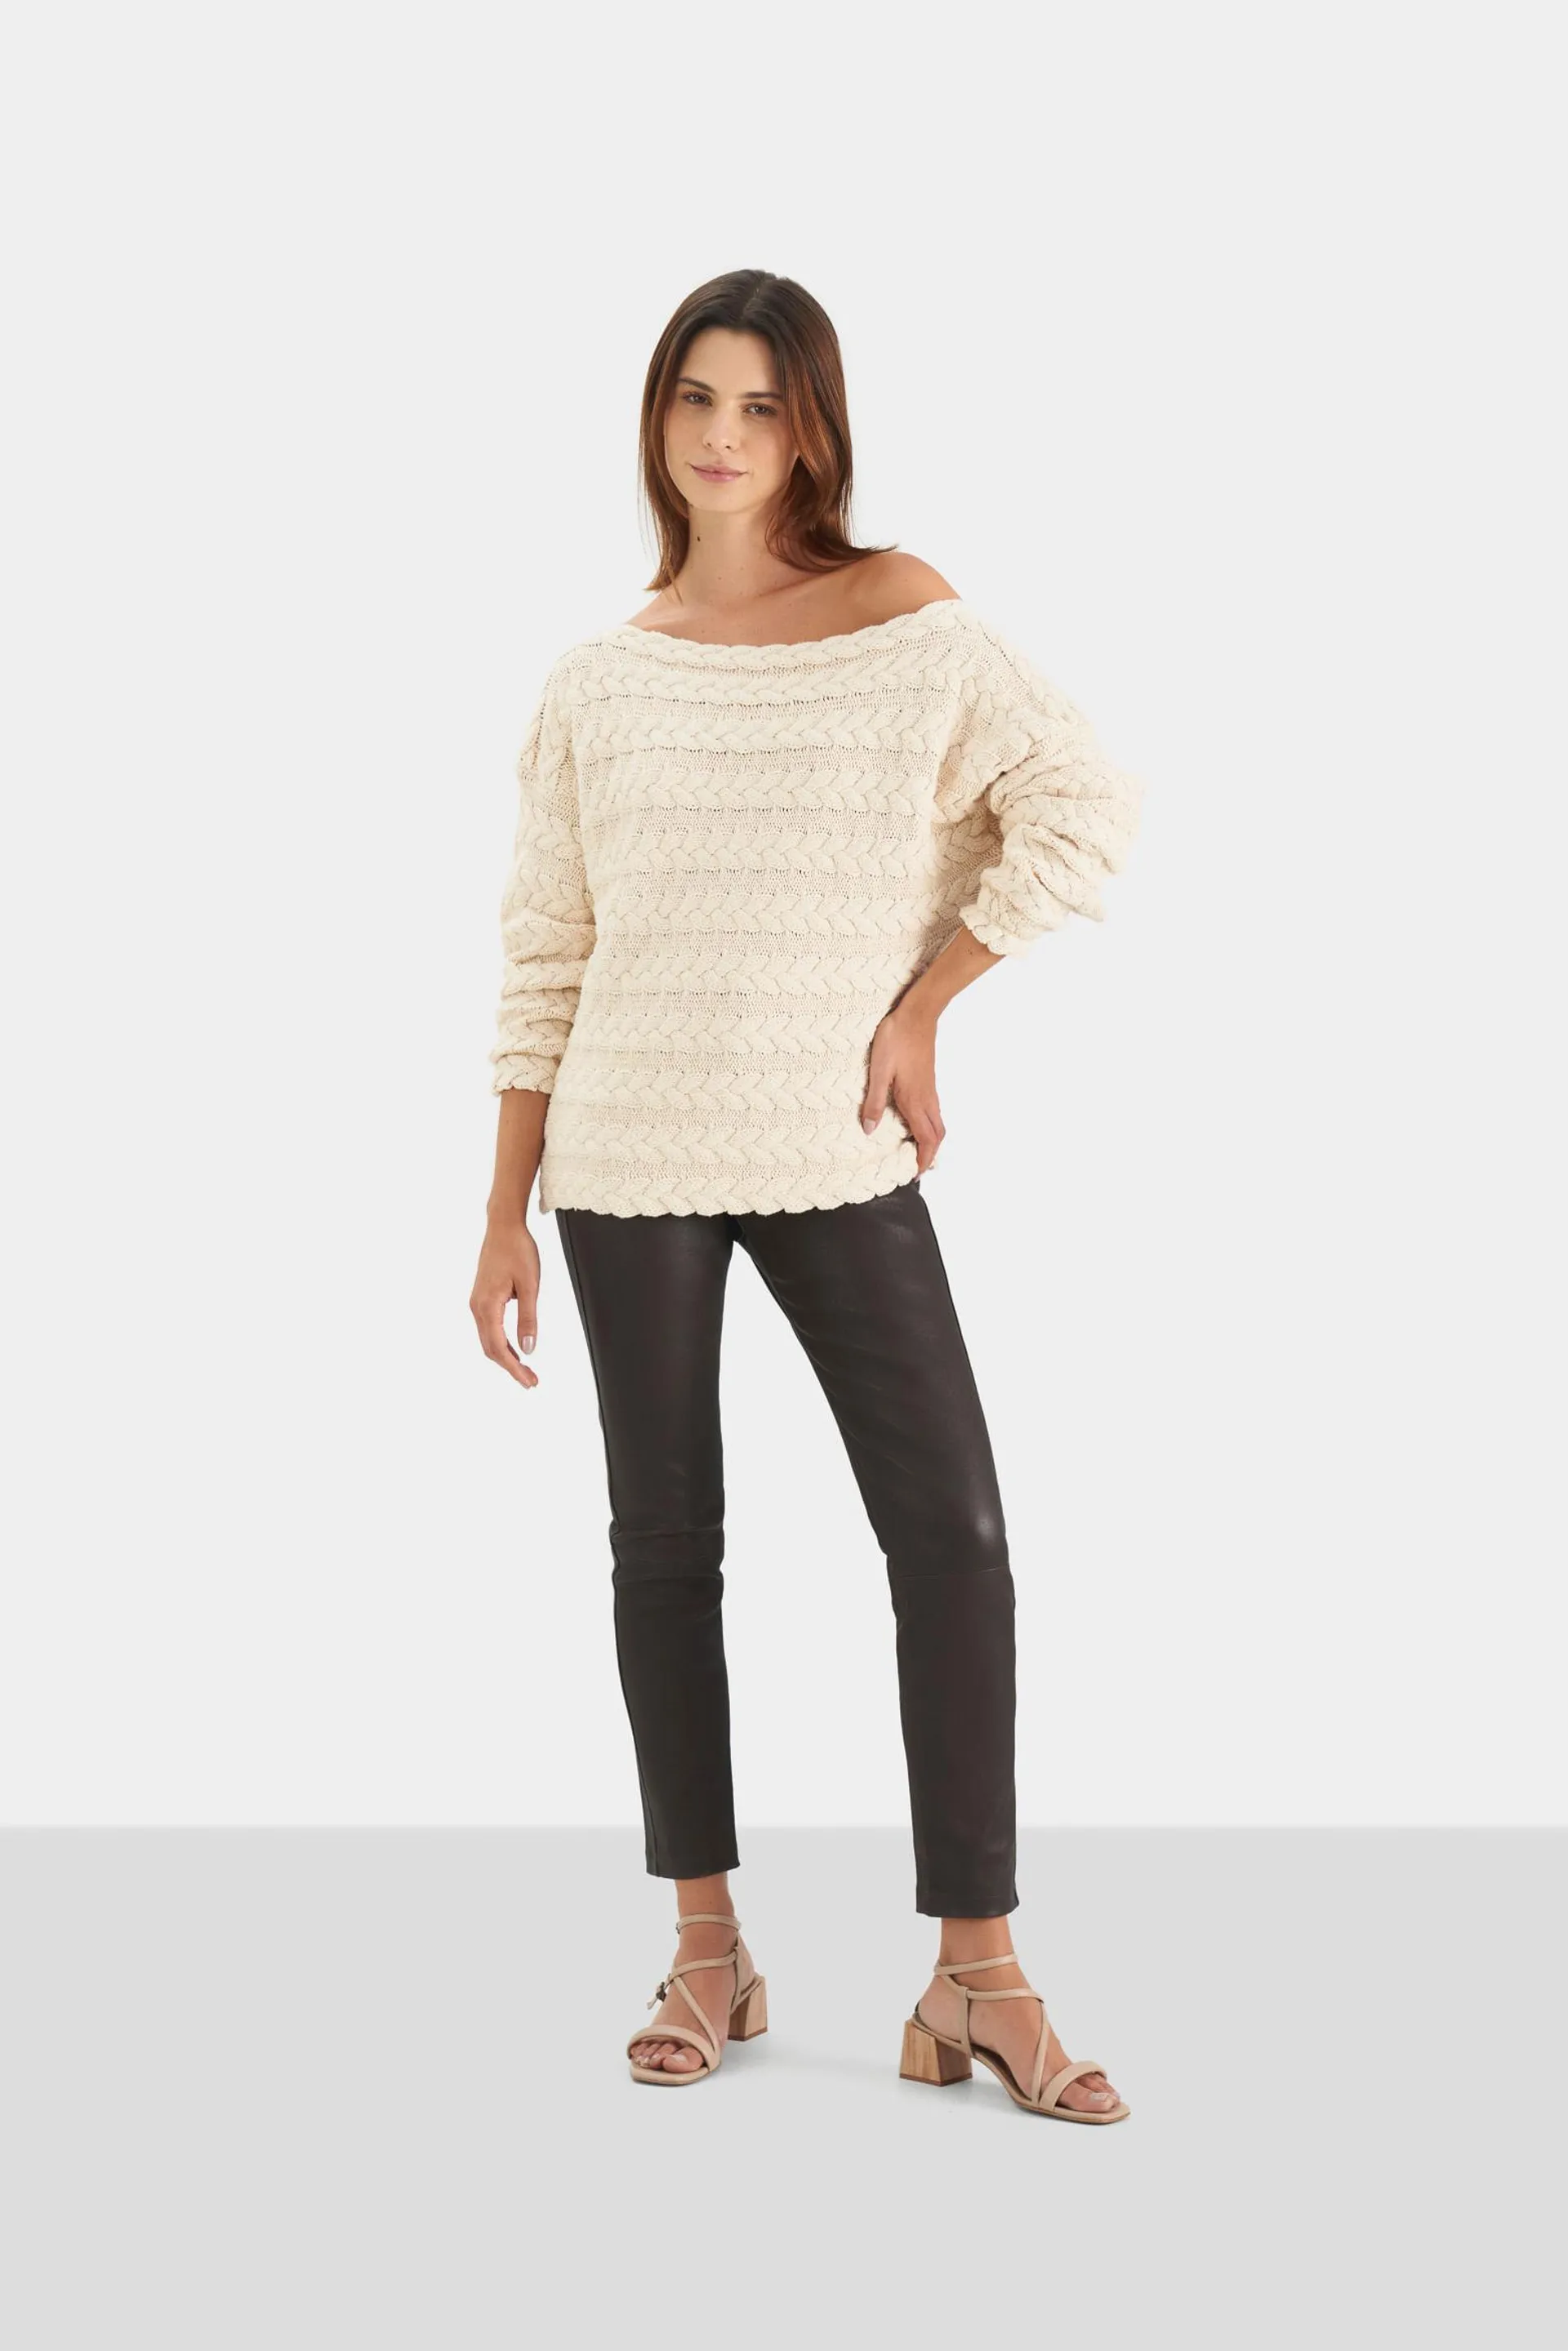 Sweater Gobi tejido trenzado para mujer silueta semiholgada